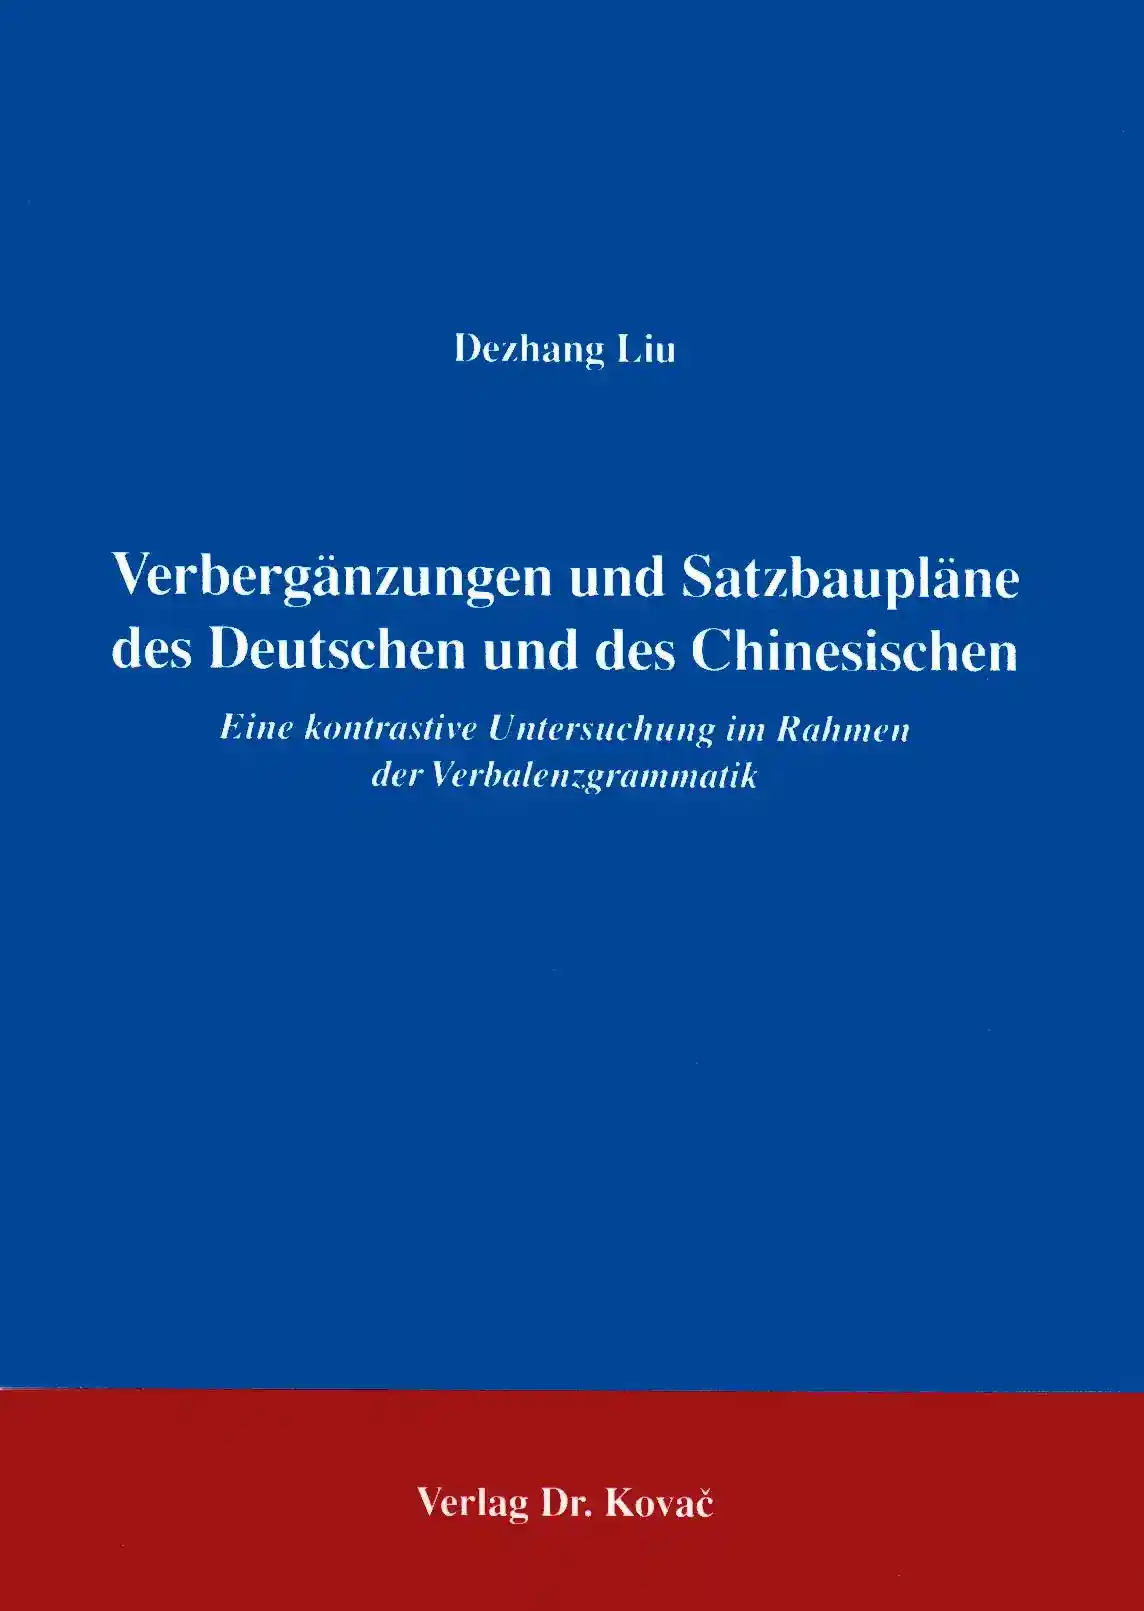 Verbergänzungen und Satzbaupläne des Deutschen und des Chinesischen (Forschungsarbeit)